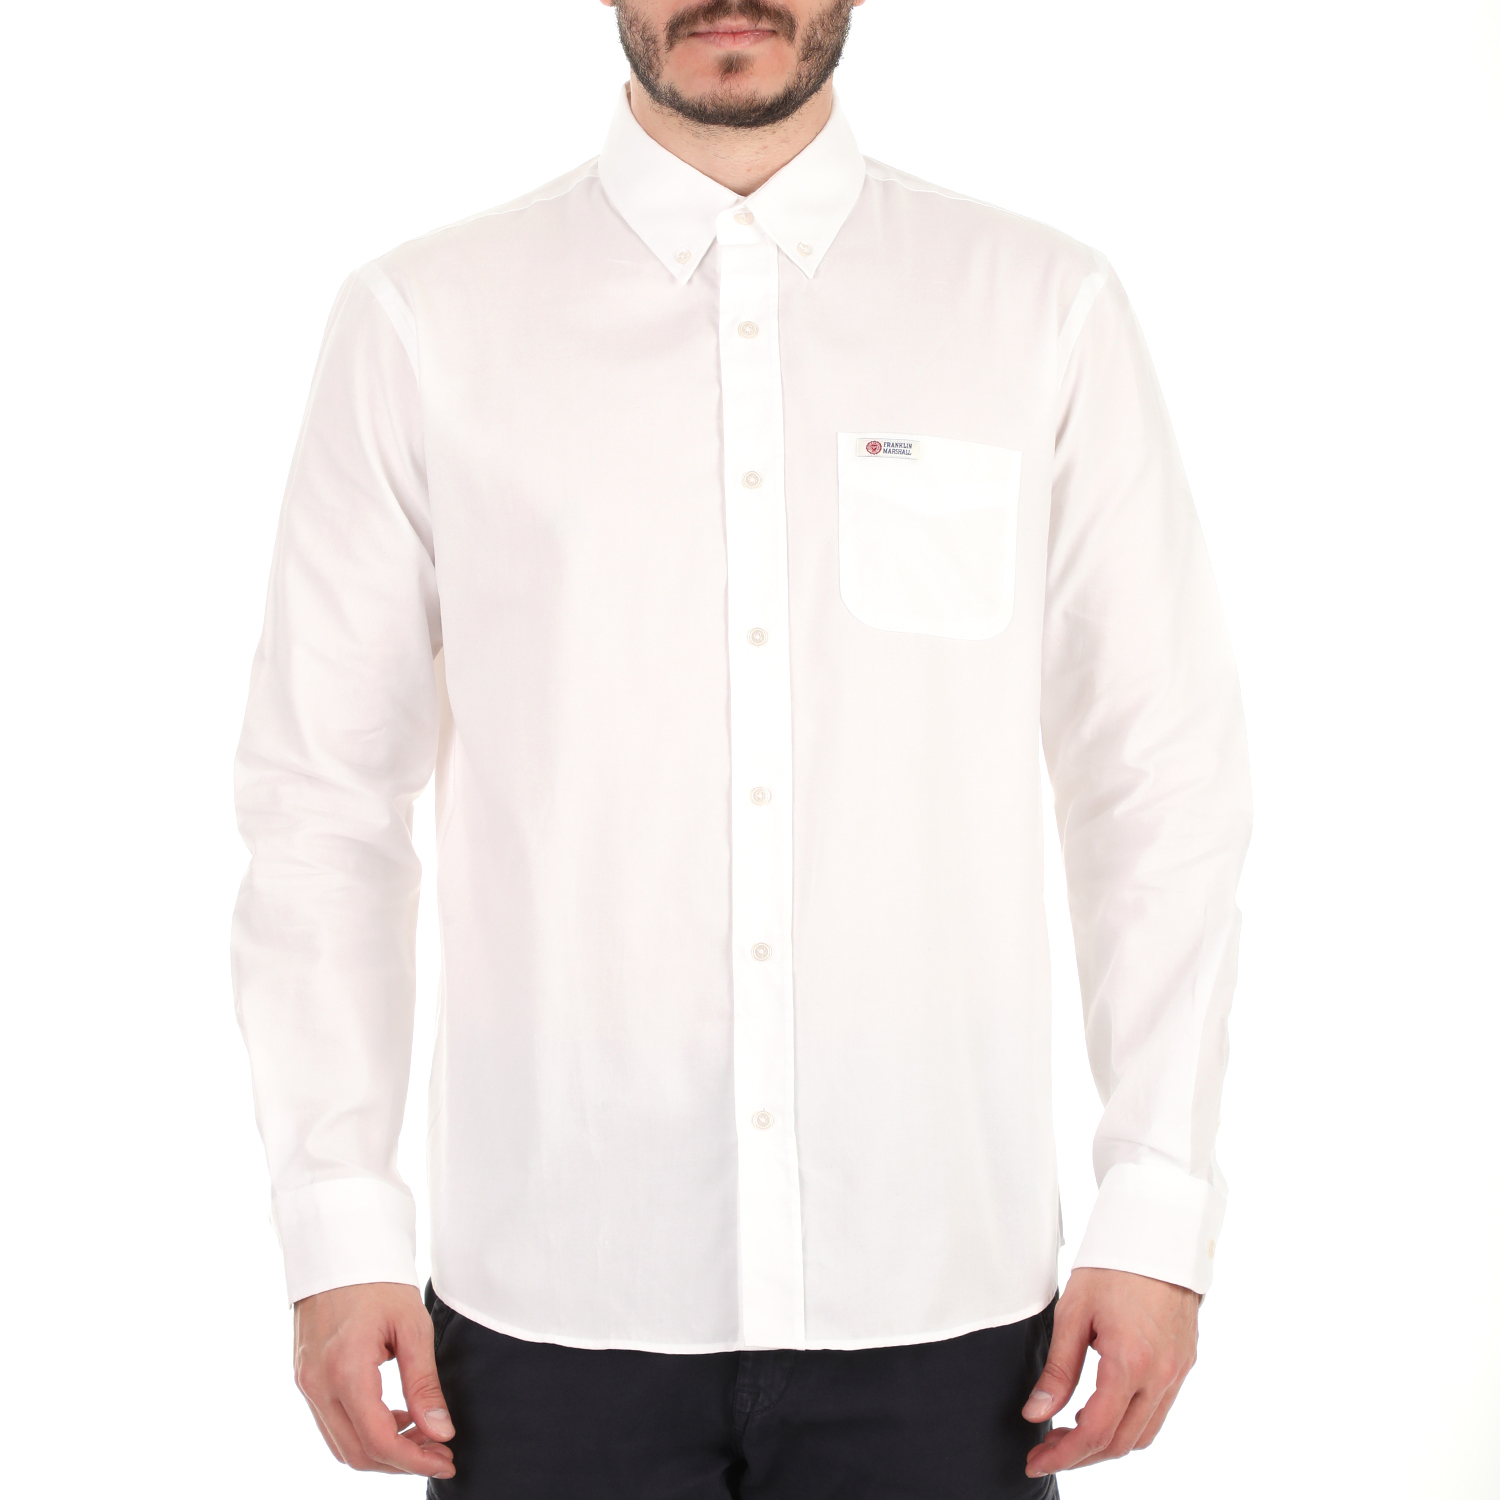 Ανδρικά/Ρούχα/Πουκάμισα/Μακρυμάνικα FRANKLIN & MARSHALL - Ανδρικό πουκάμισο FRANKLIN & MARSHALL λευκό